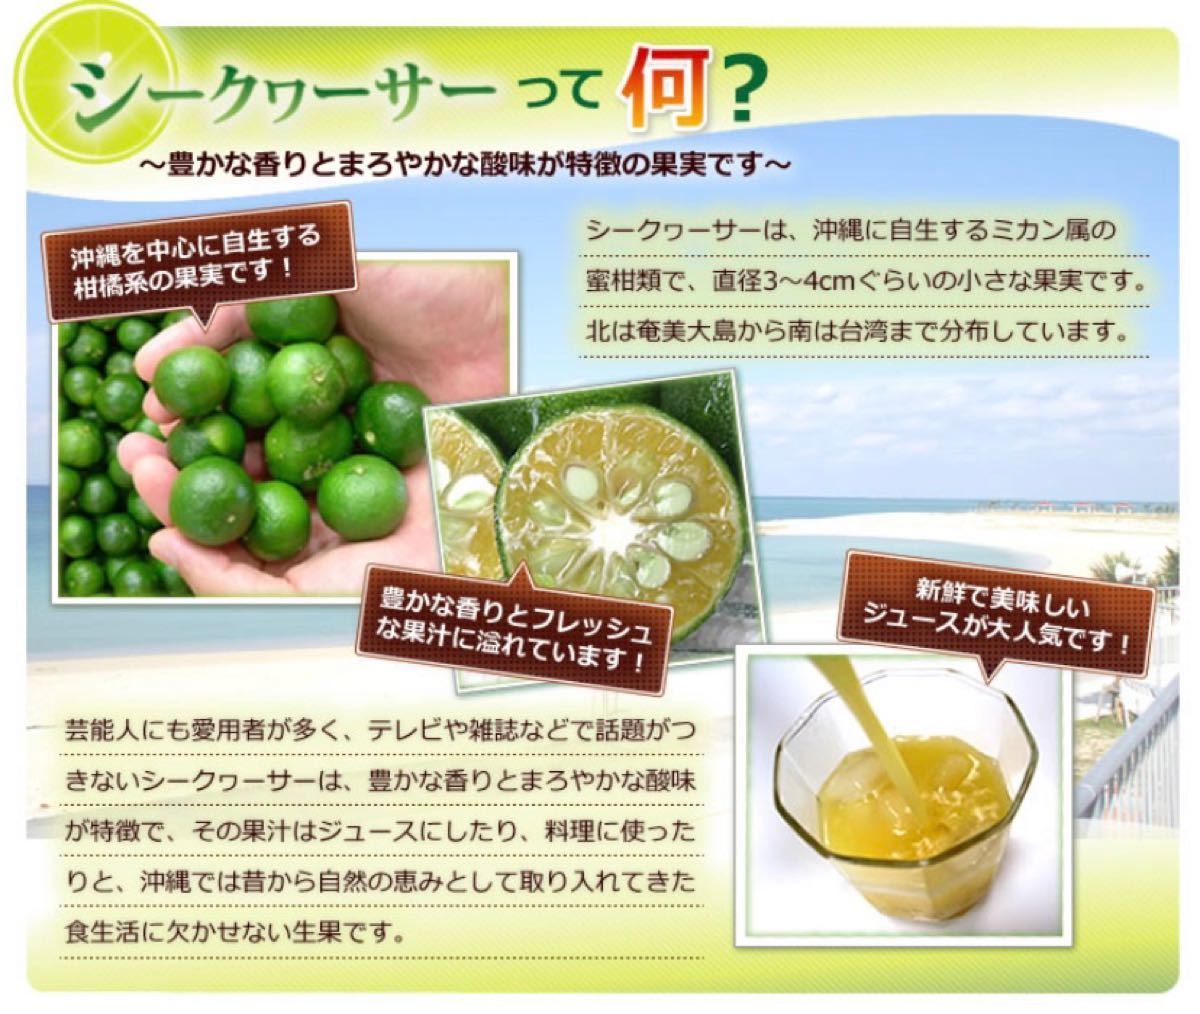 沖縄産シークワーサーをまるごと搾った100%果汁(500ml)3本セット